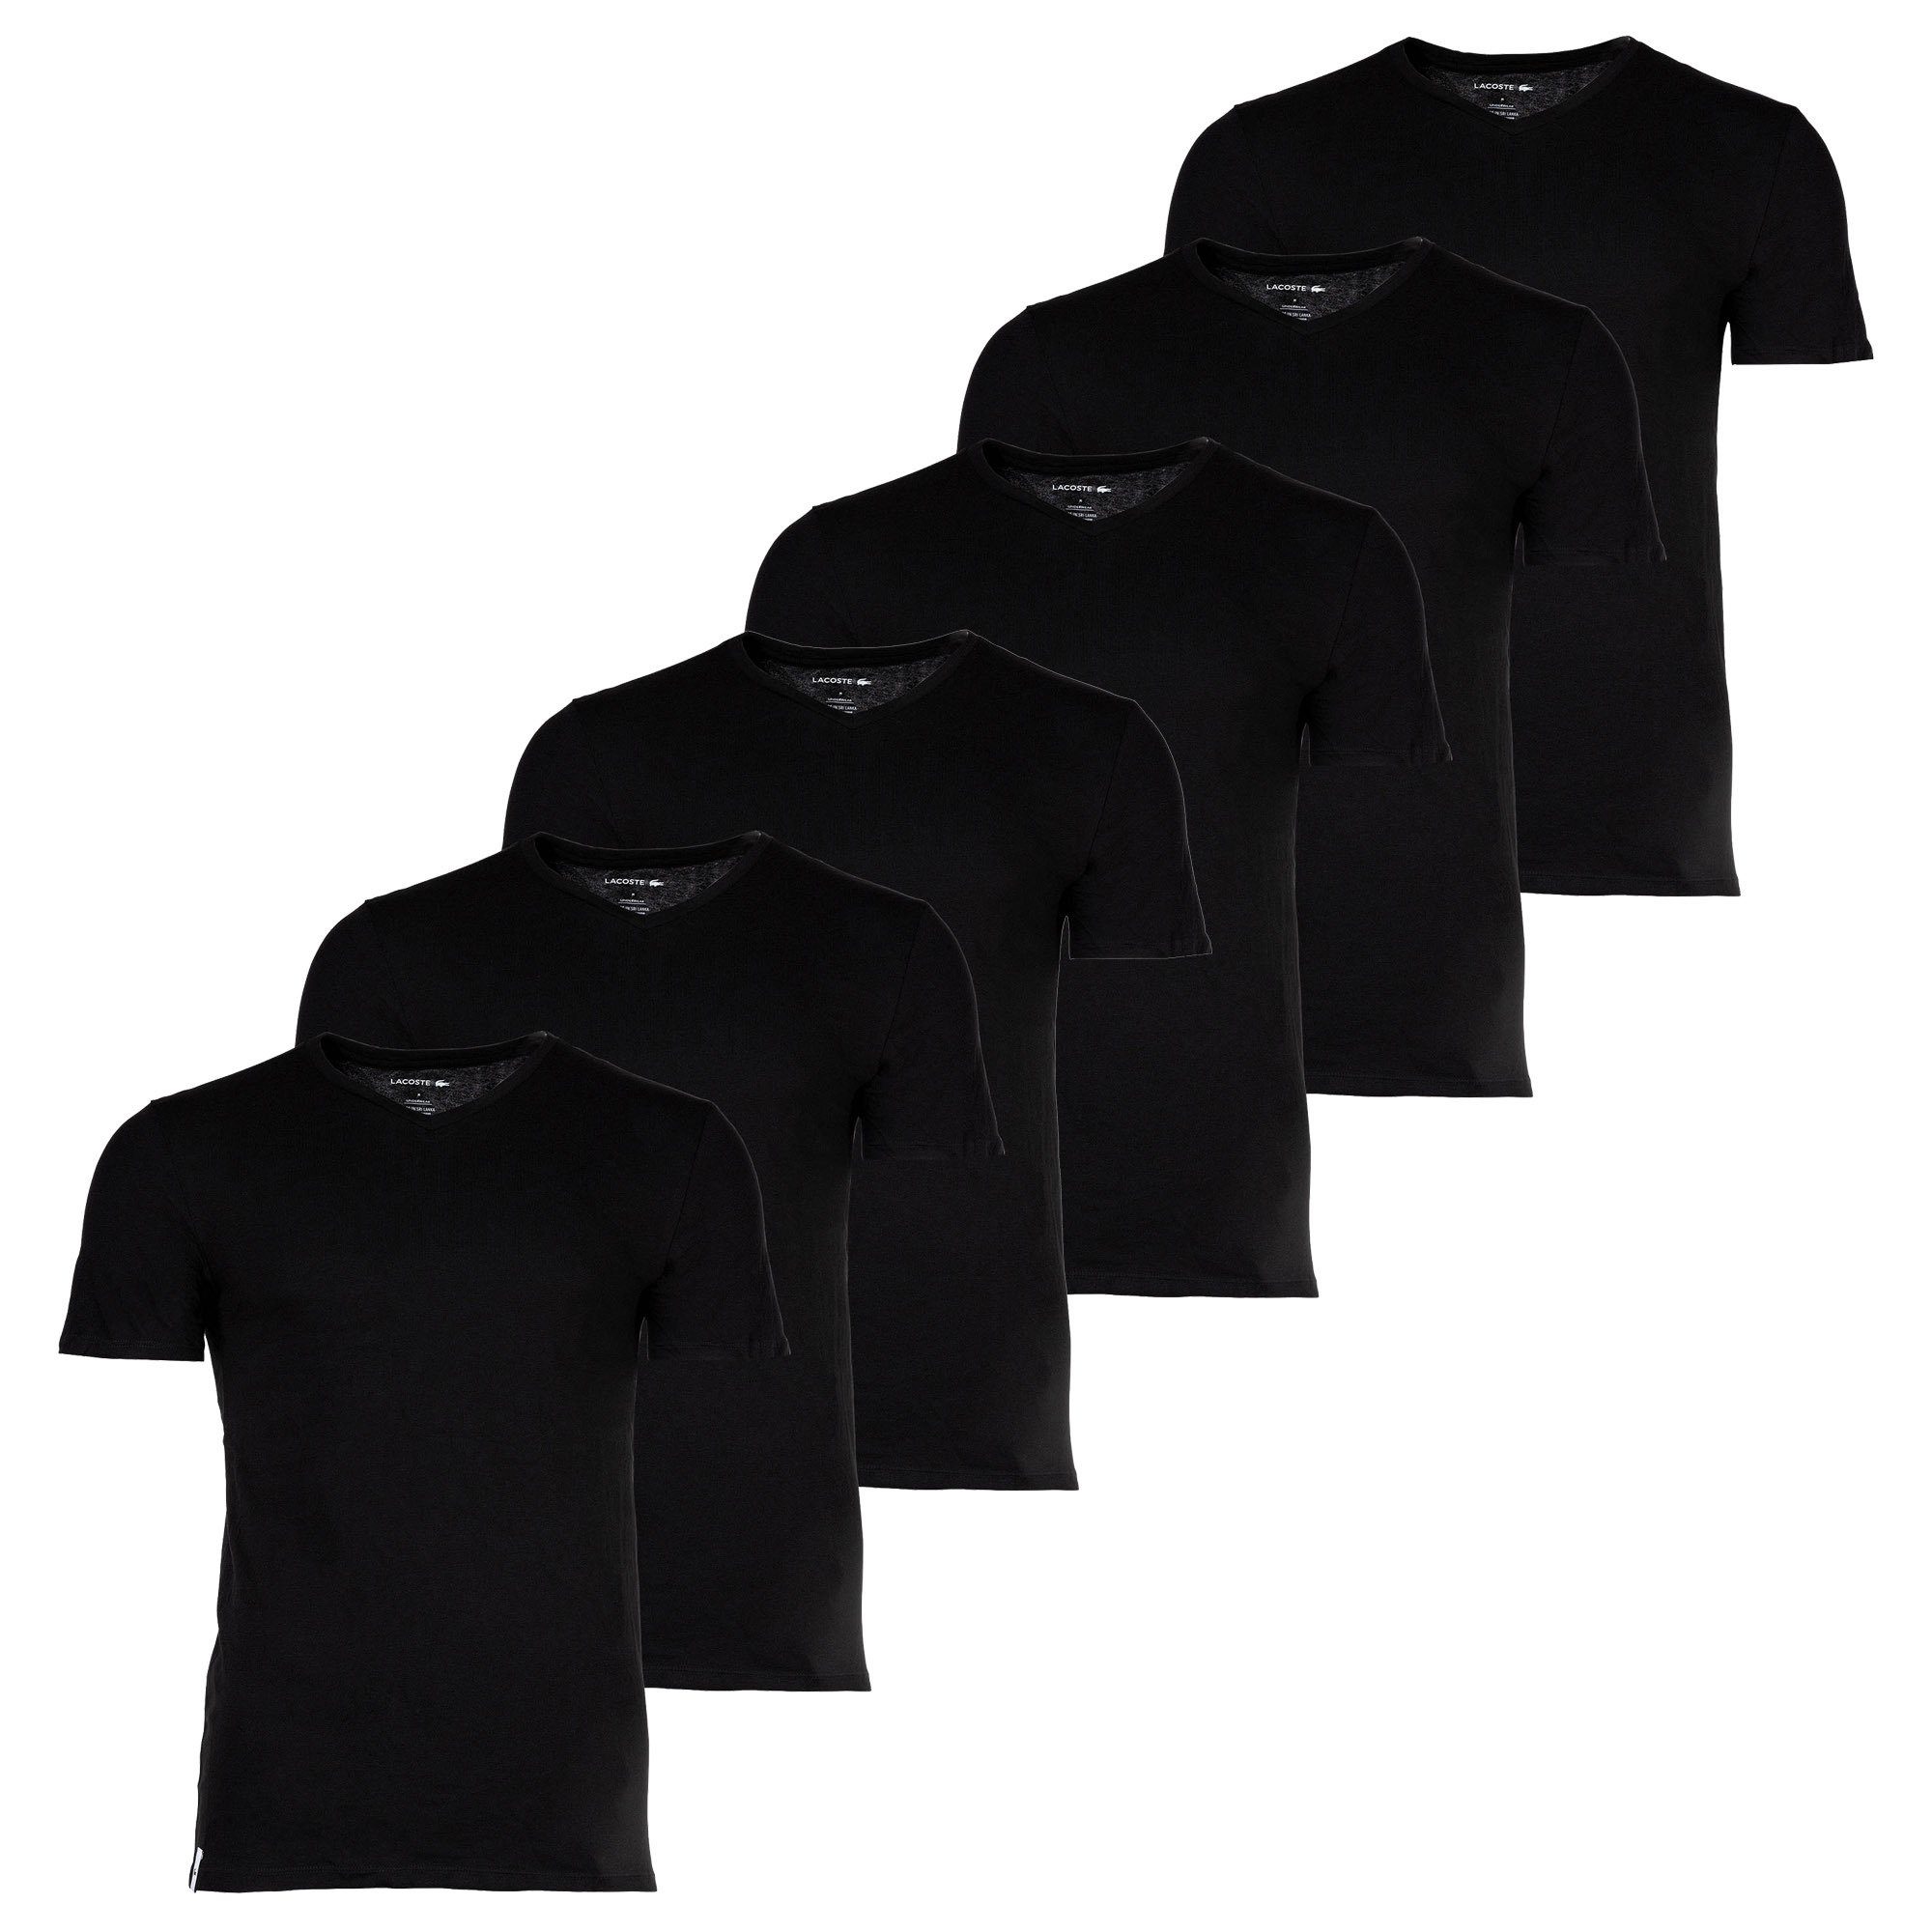 Lacoste T-Shirt Herren T-Shirts, 6er Pack - Essentials Schwarz